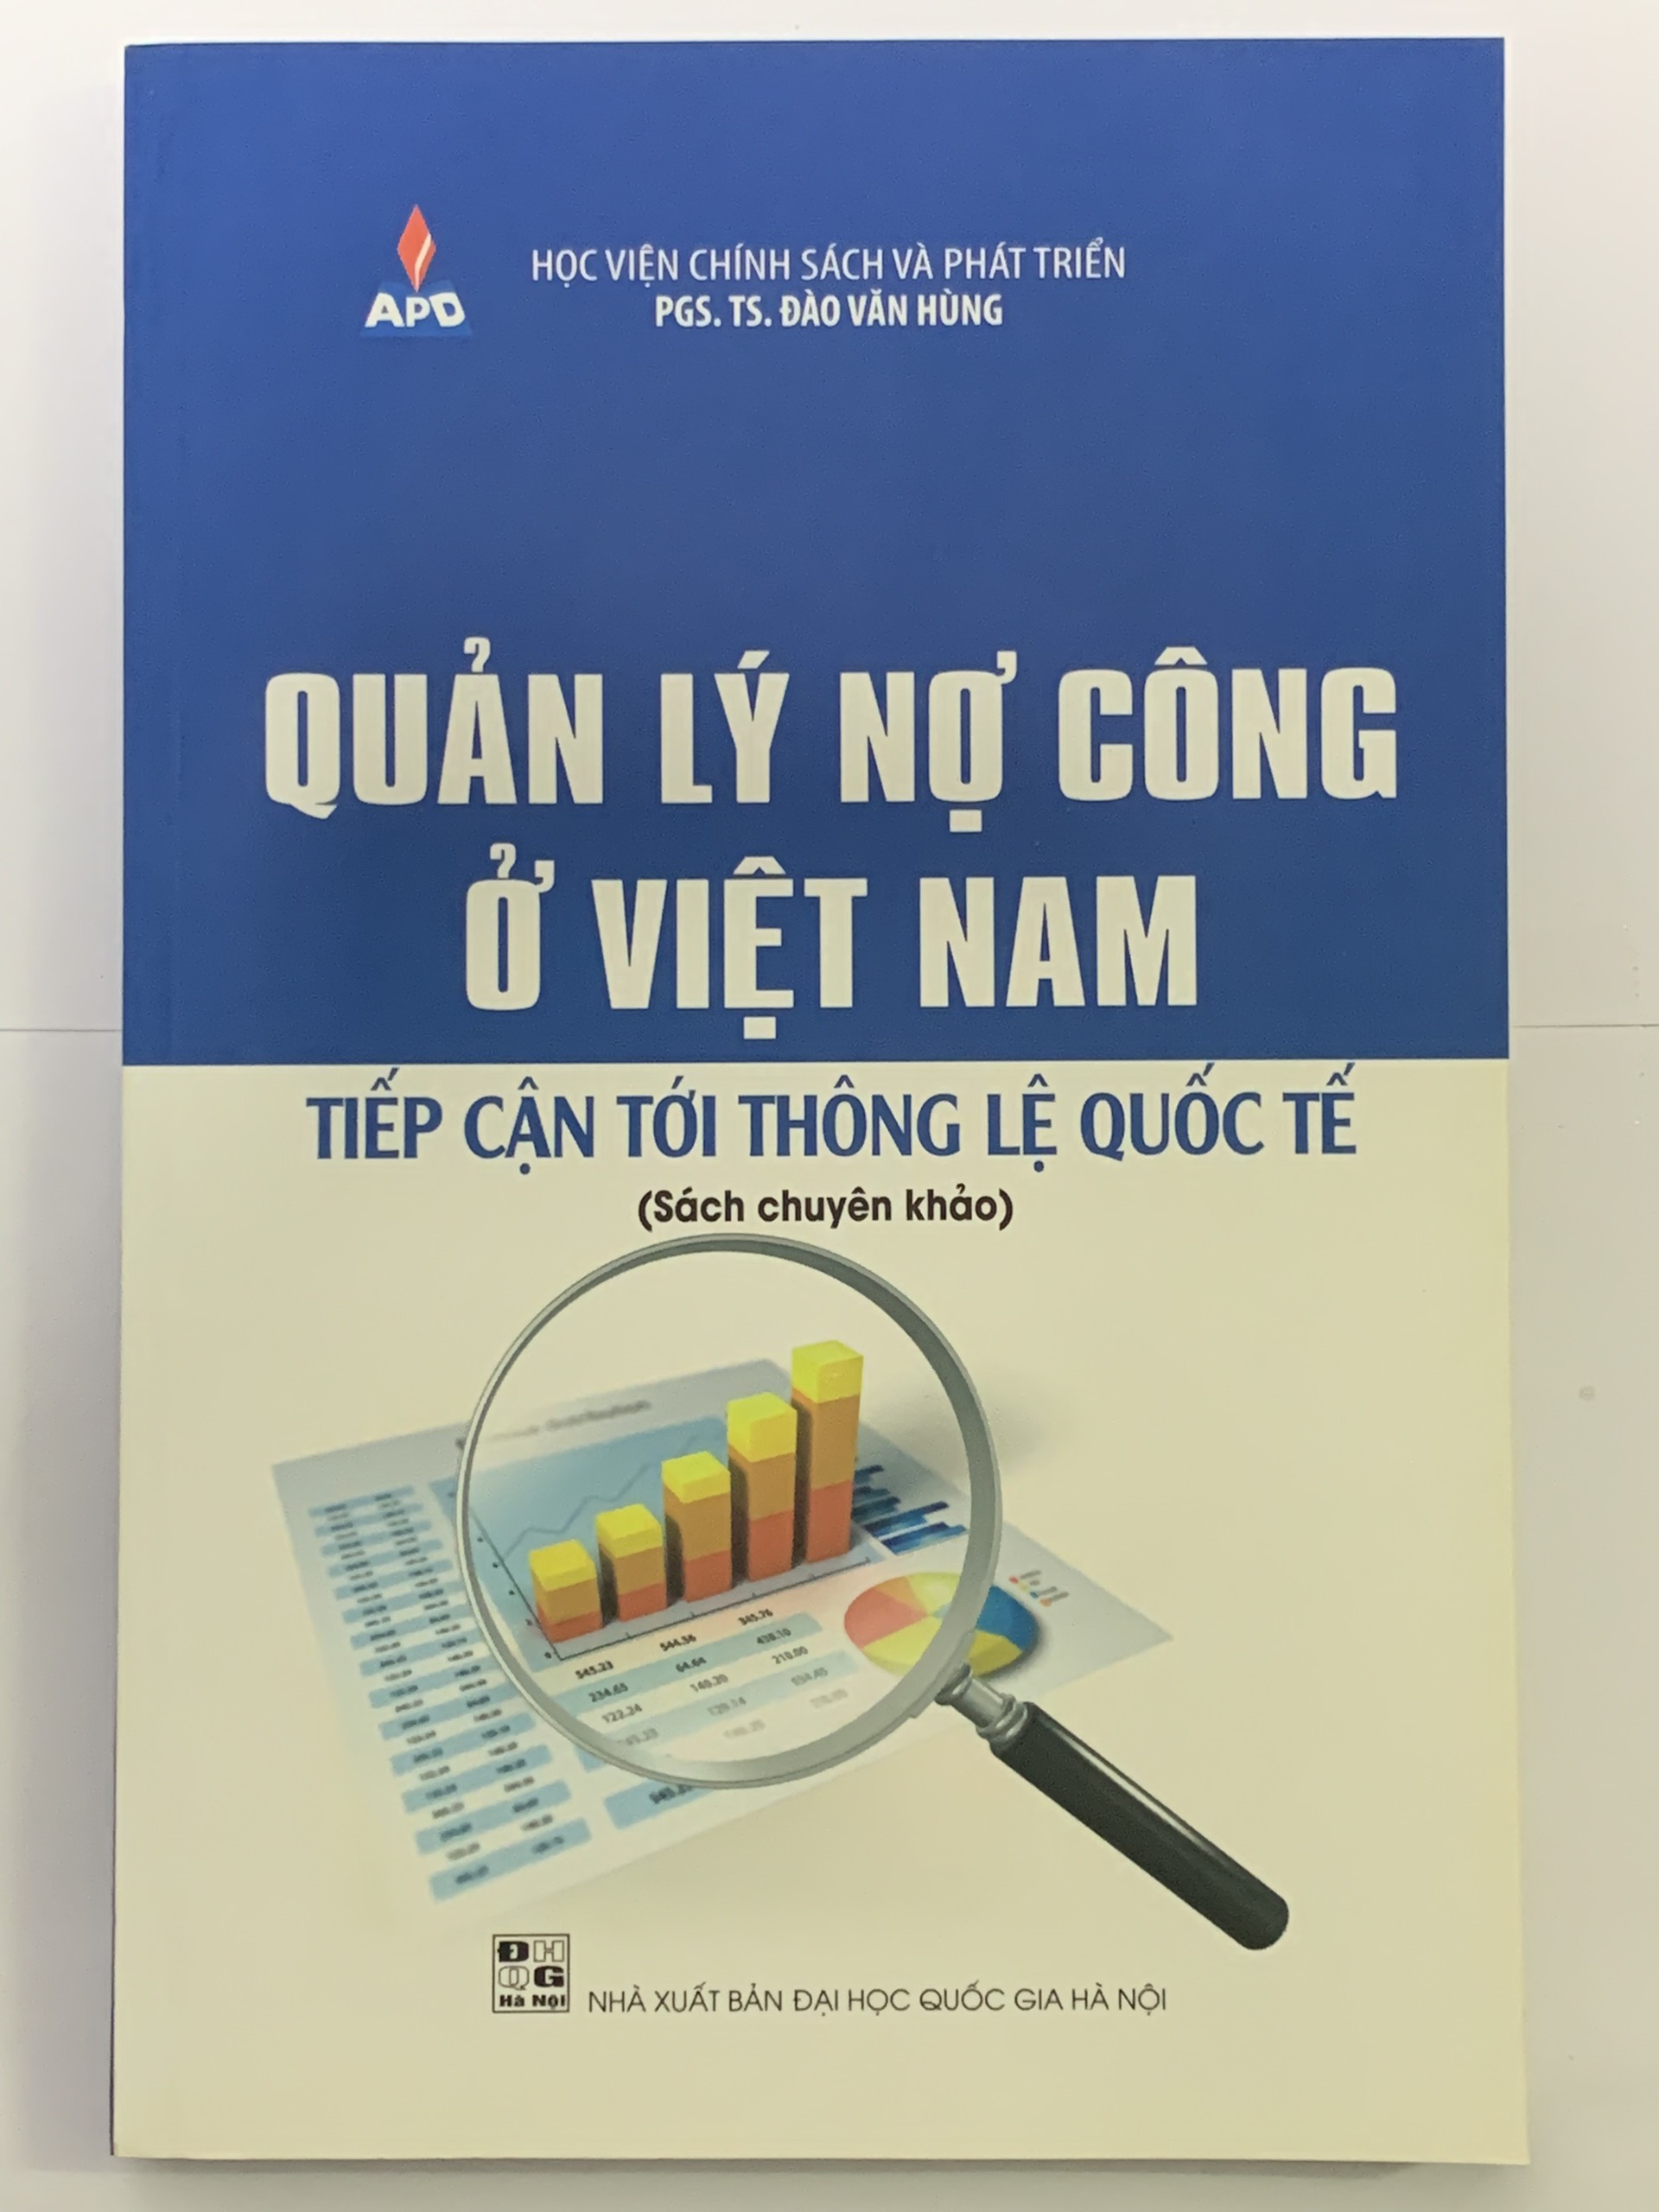 Quản Lý Nợ Công Ở Việt Nam Tiếp Cận Tới Thông Lệ Quốc Tế  PGS. TS. Đào Văn